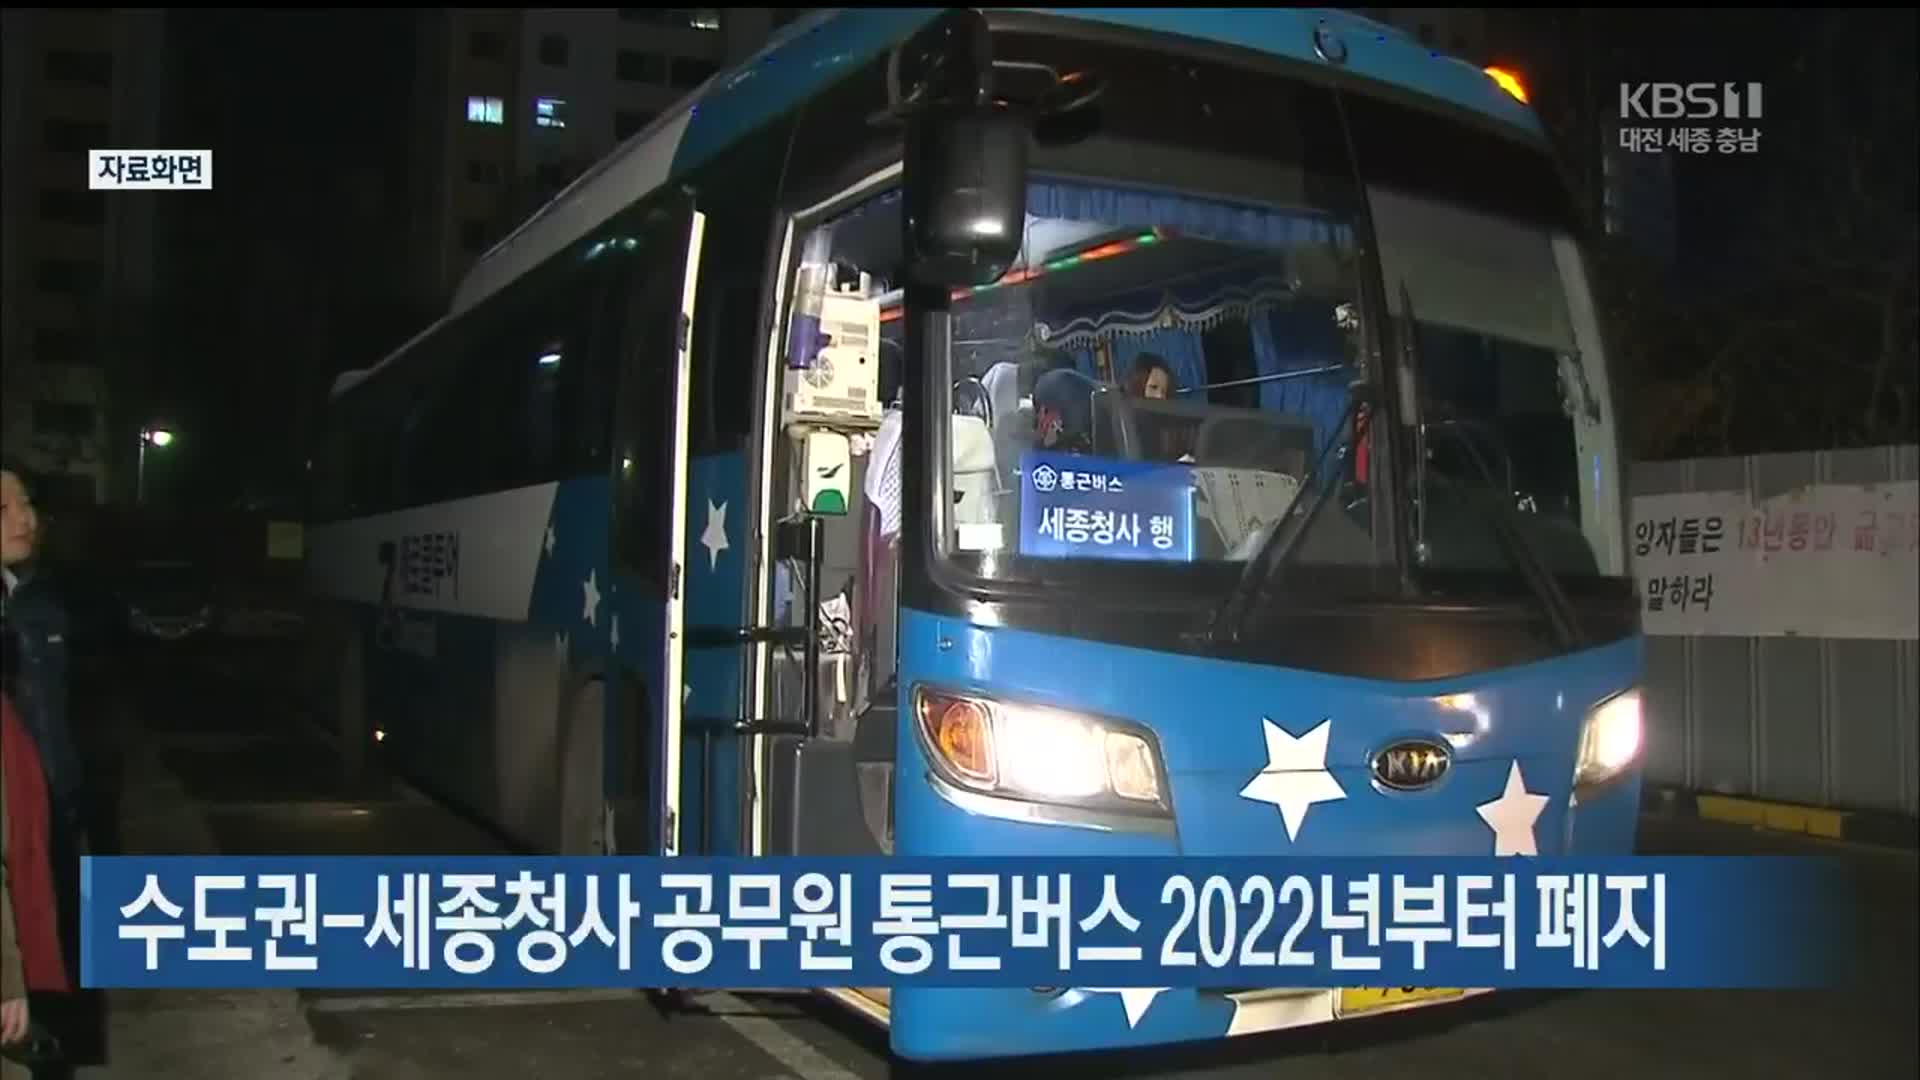 수도권-세종청사 공무원 통근버스 2022년부터 폐지